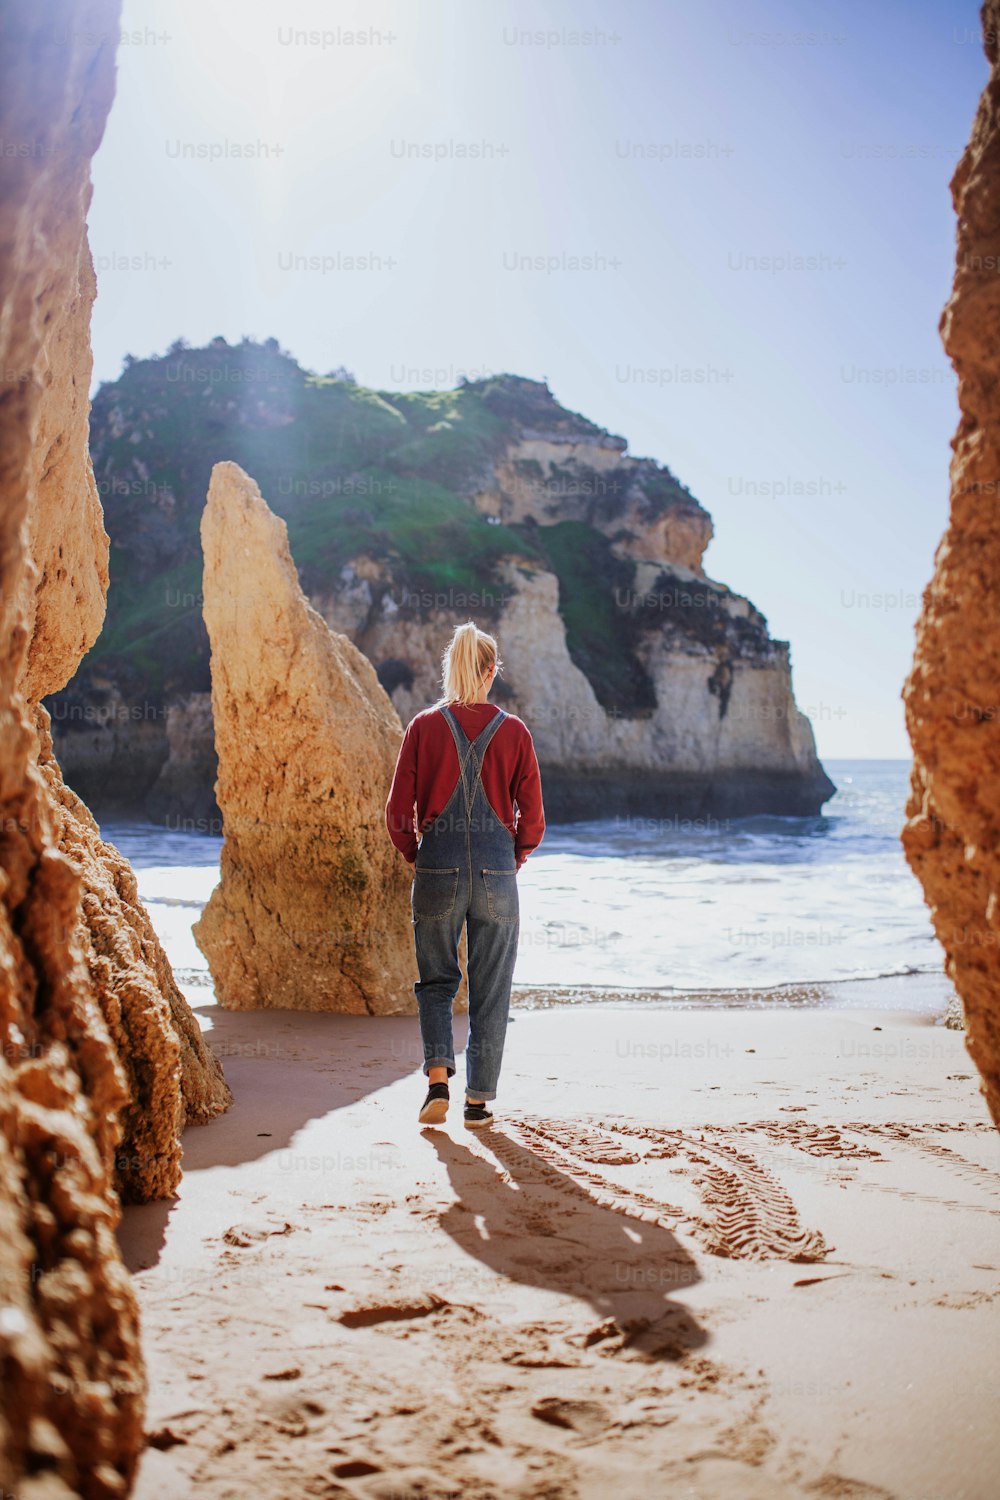 una persona caminando en una playa cerca de algunas rocas